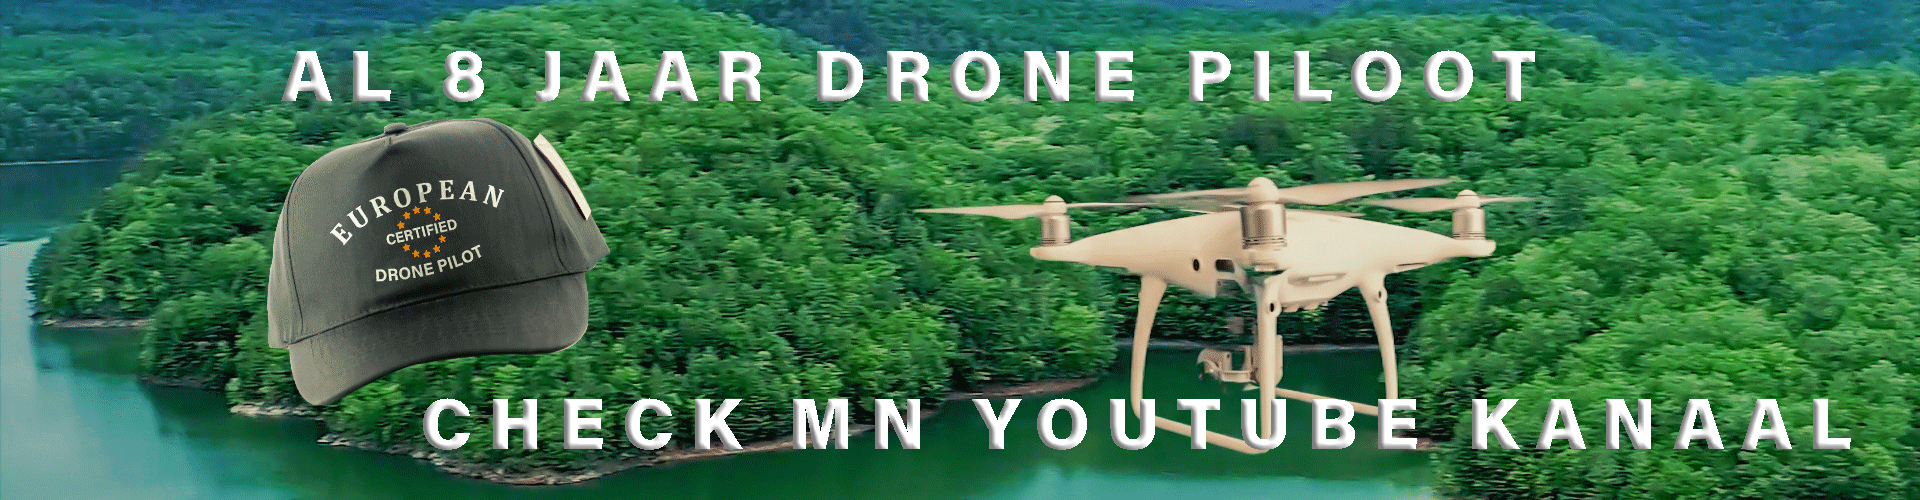 EU-DronePiloten